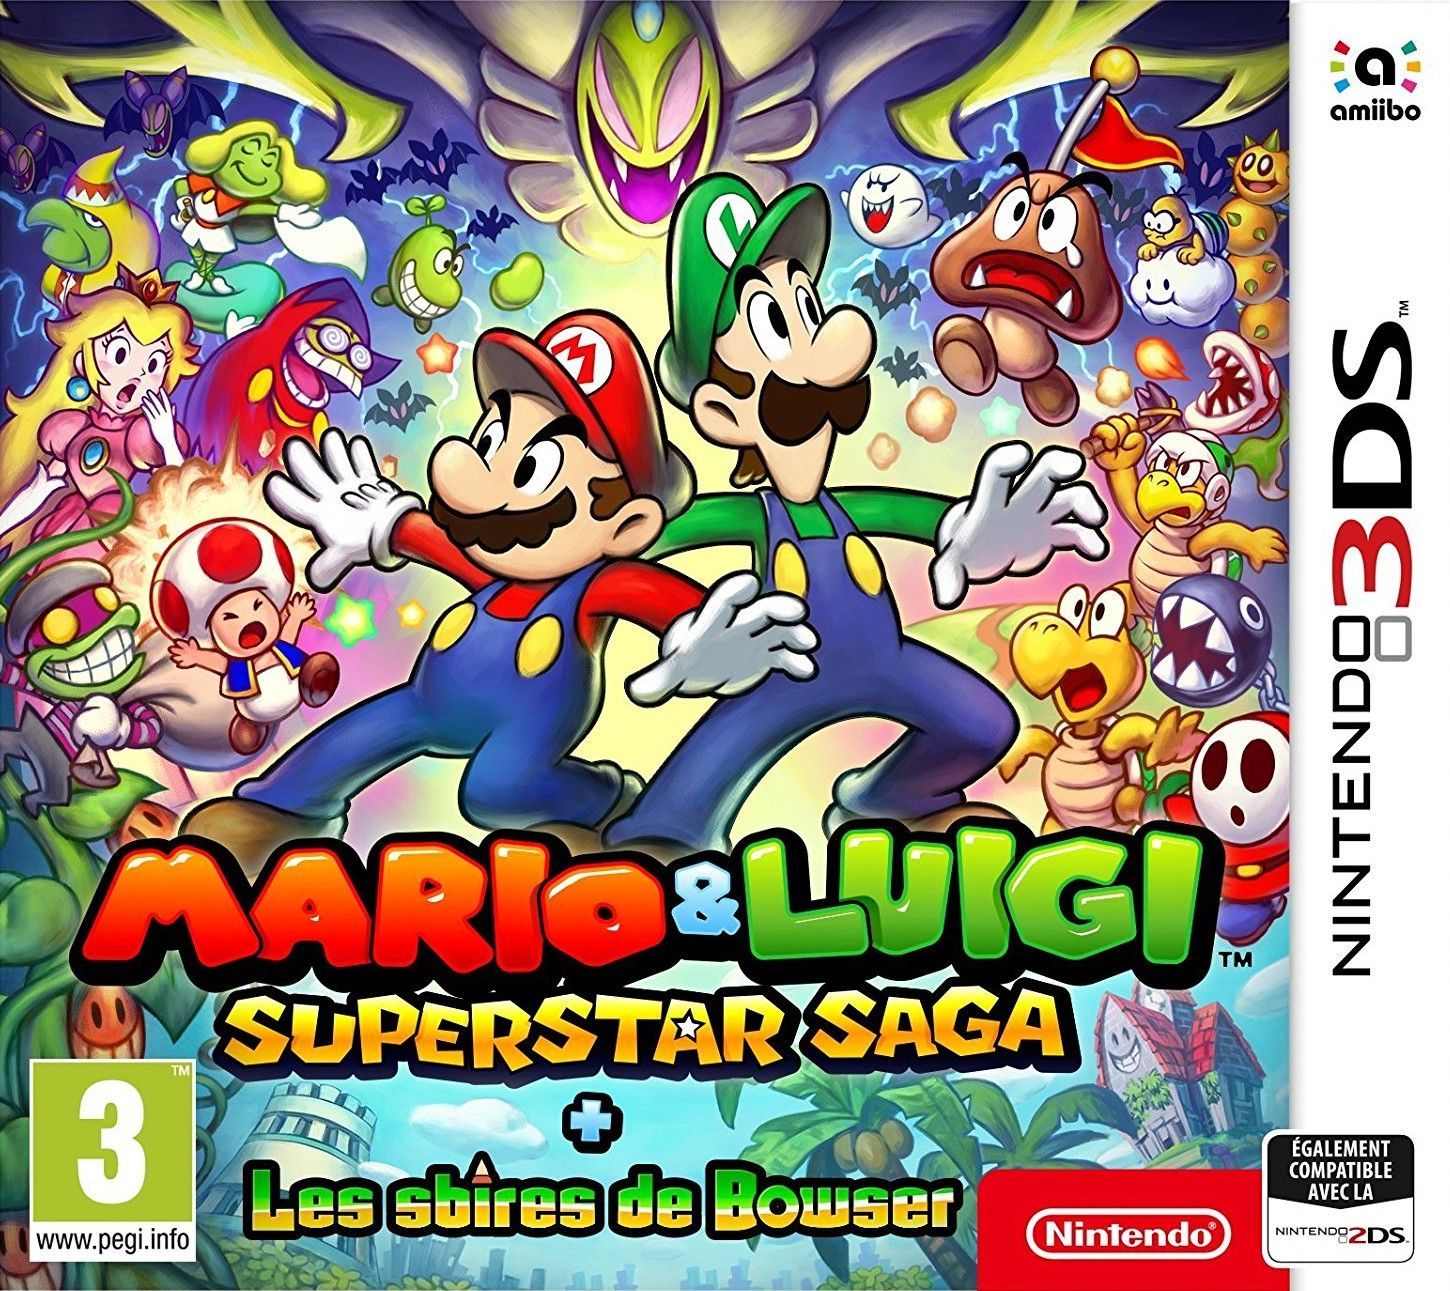 jaquette reduite de Mario & Luigi: Superstar Saga + Les sbires de Bowser sur 3DS